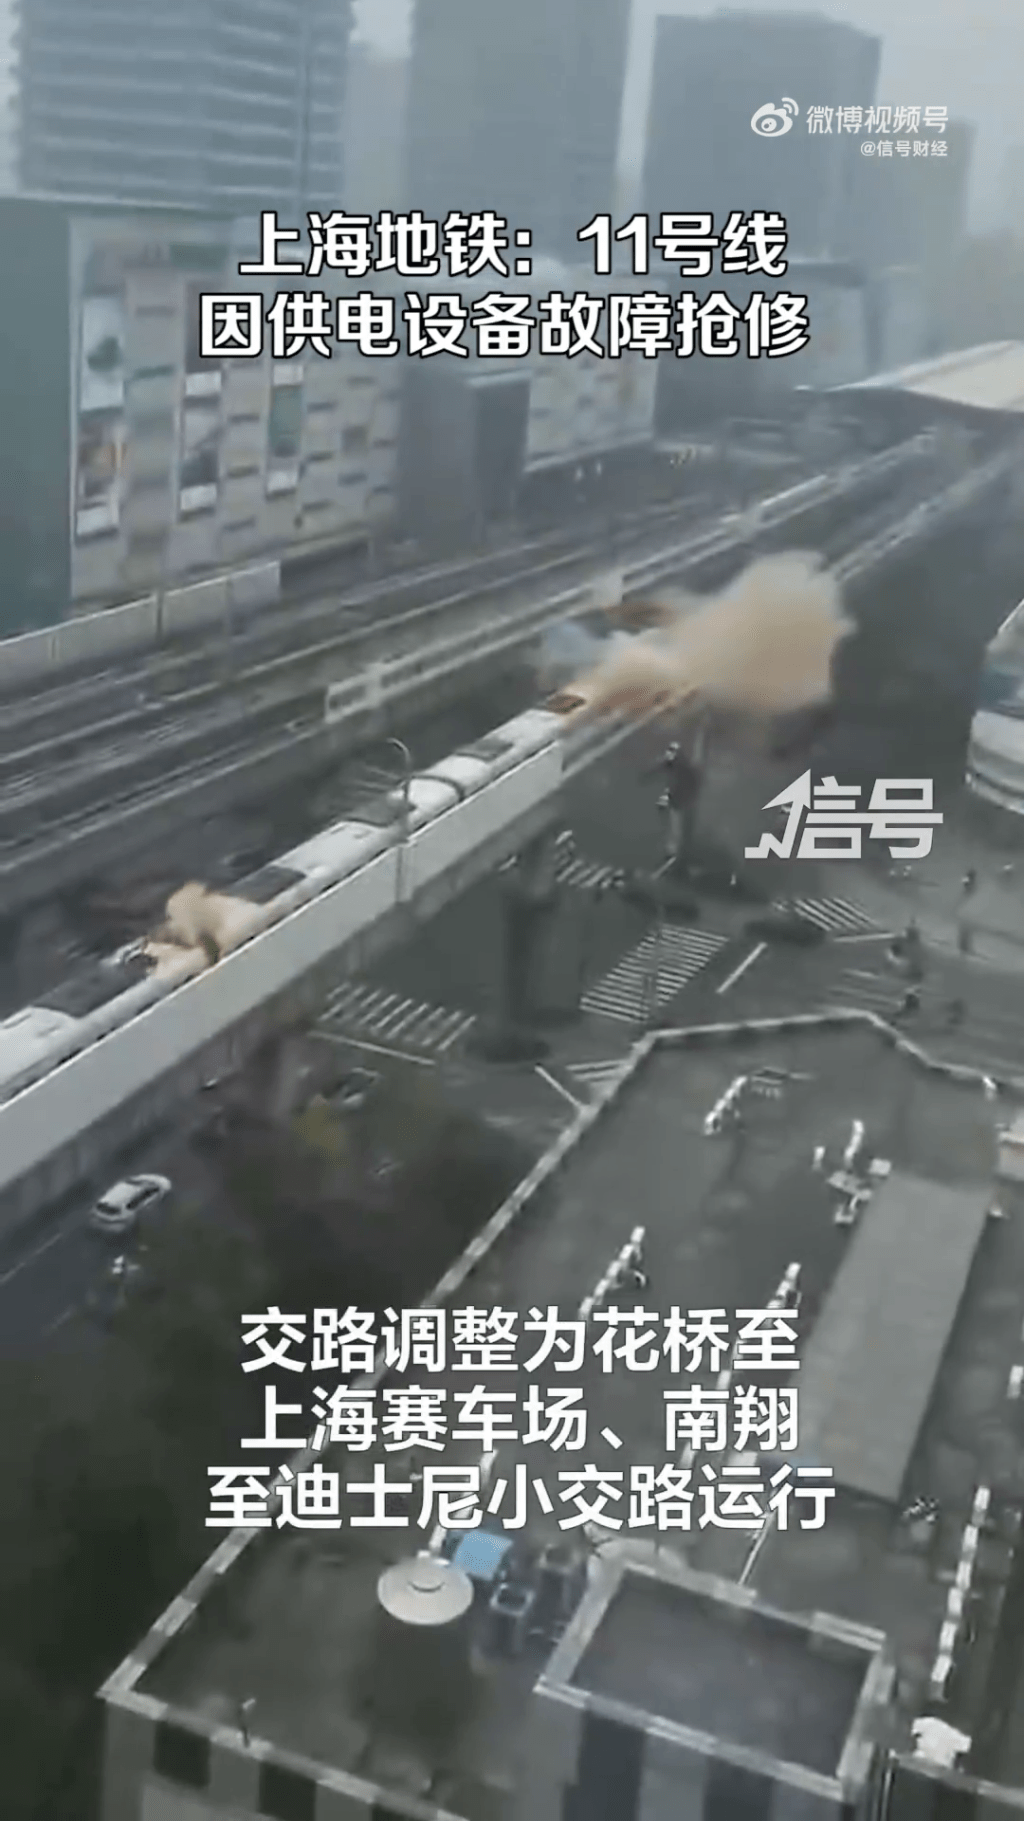 上海地鐵11號線故障現場冒出大量白煙。